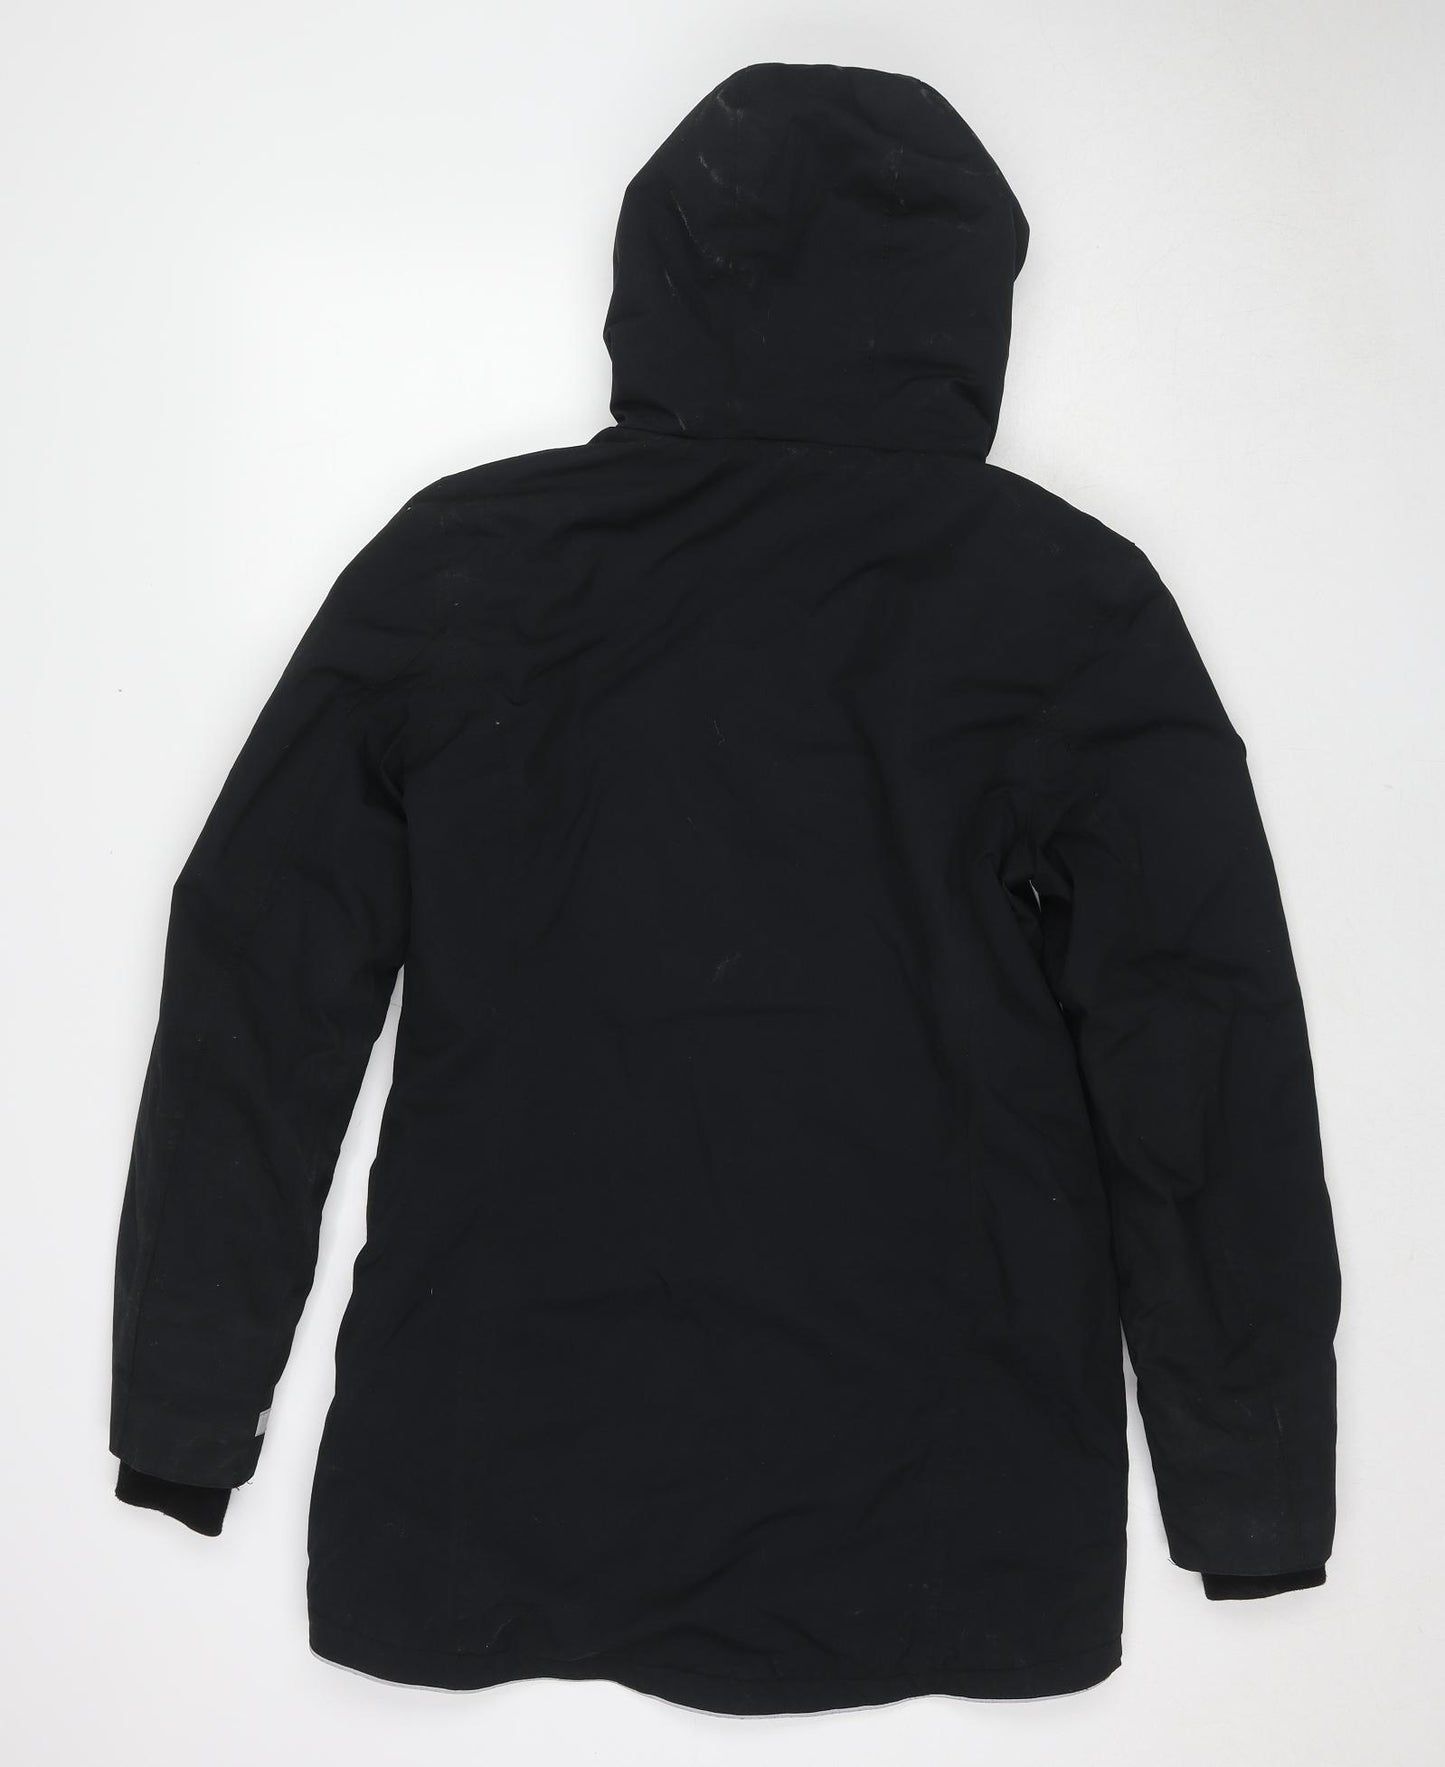 KangaROOS Womens Black Windbreaker Jacket Size 10 Zip